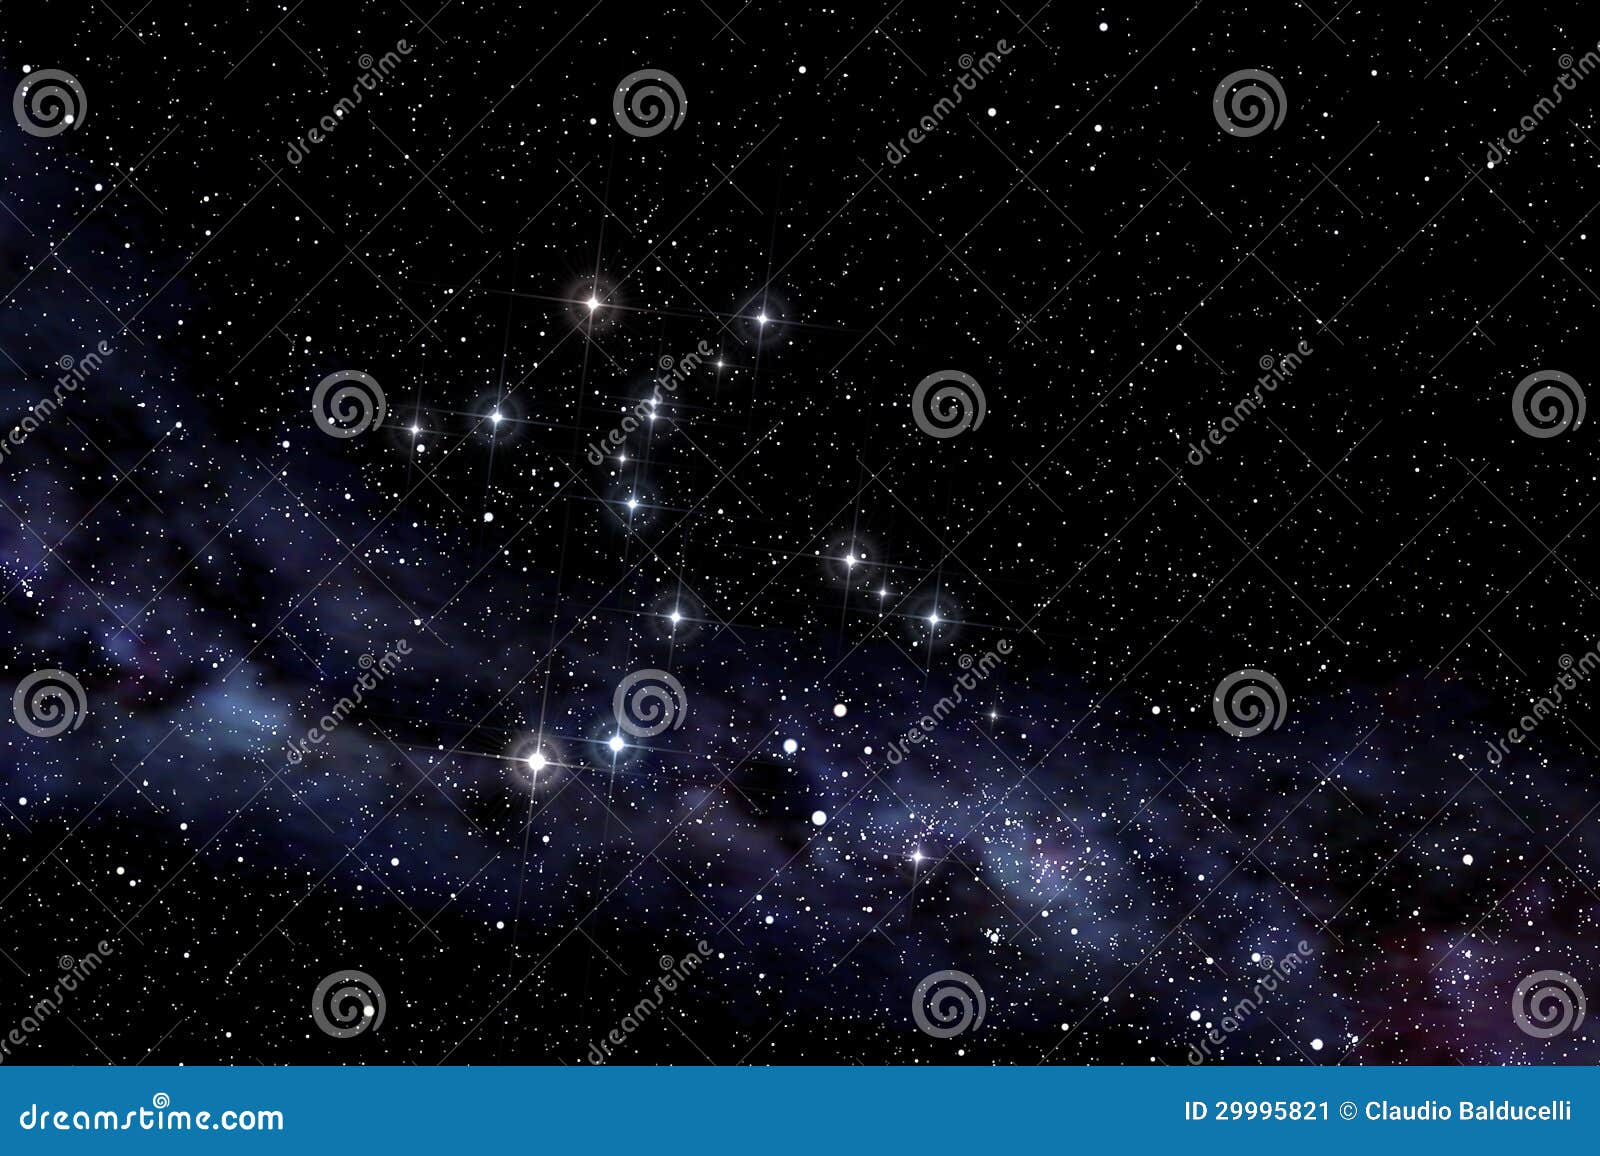 cerntaurus constellation